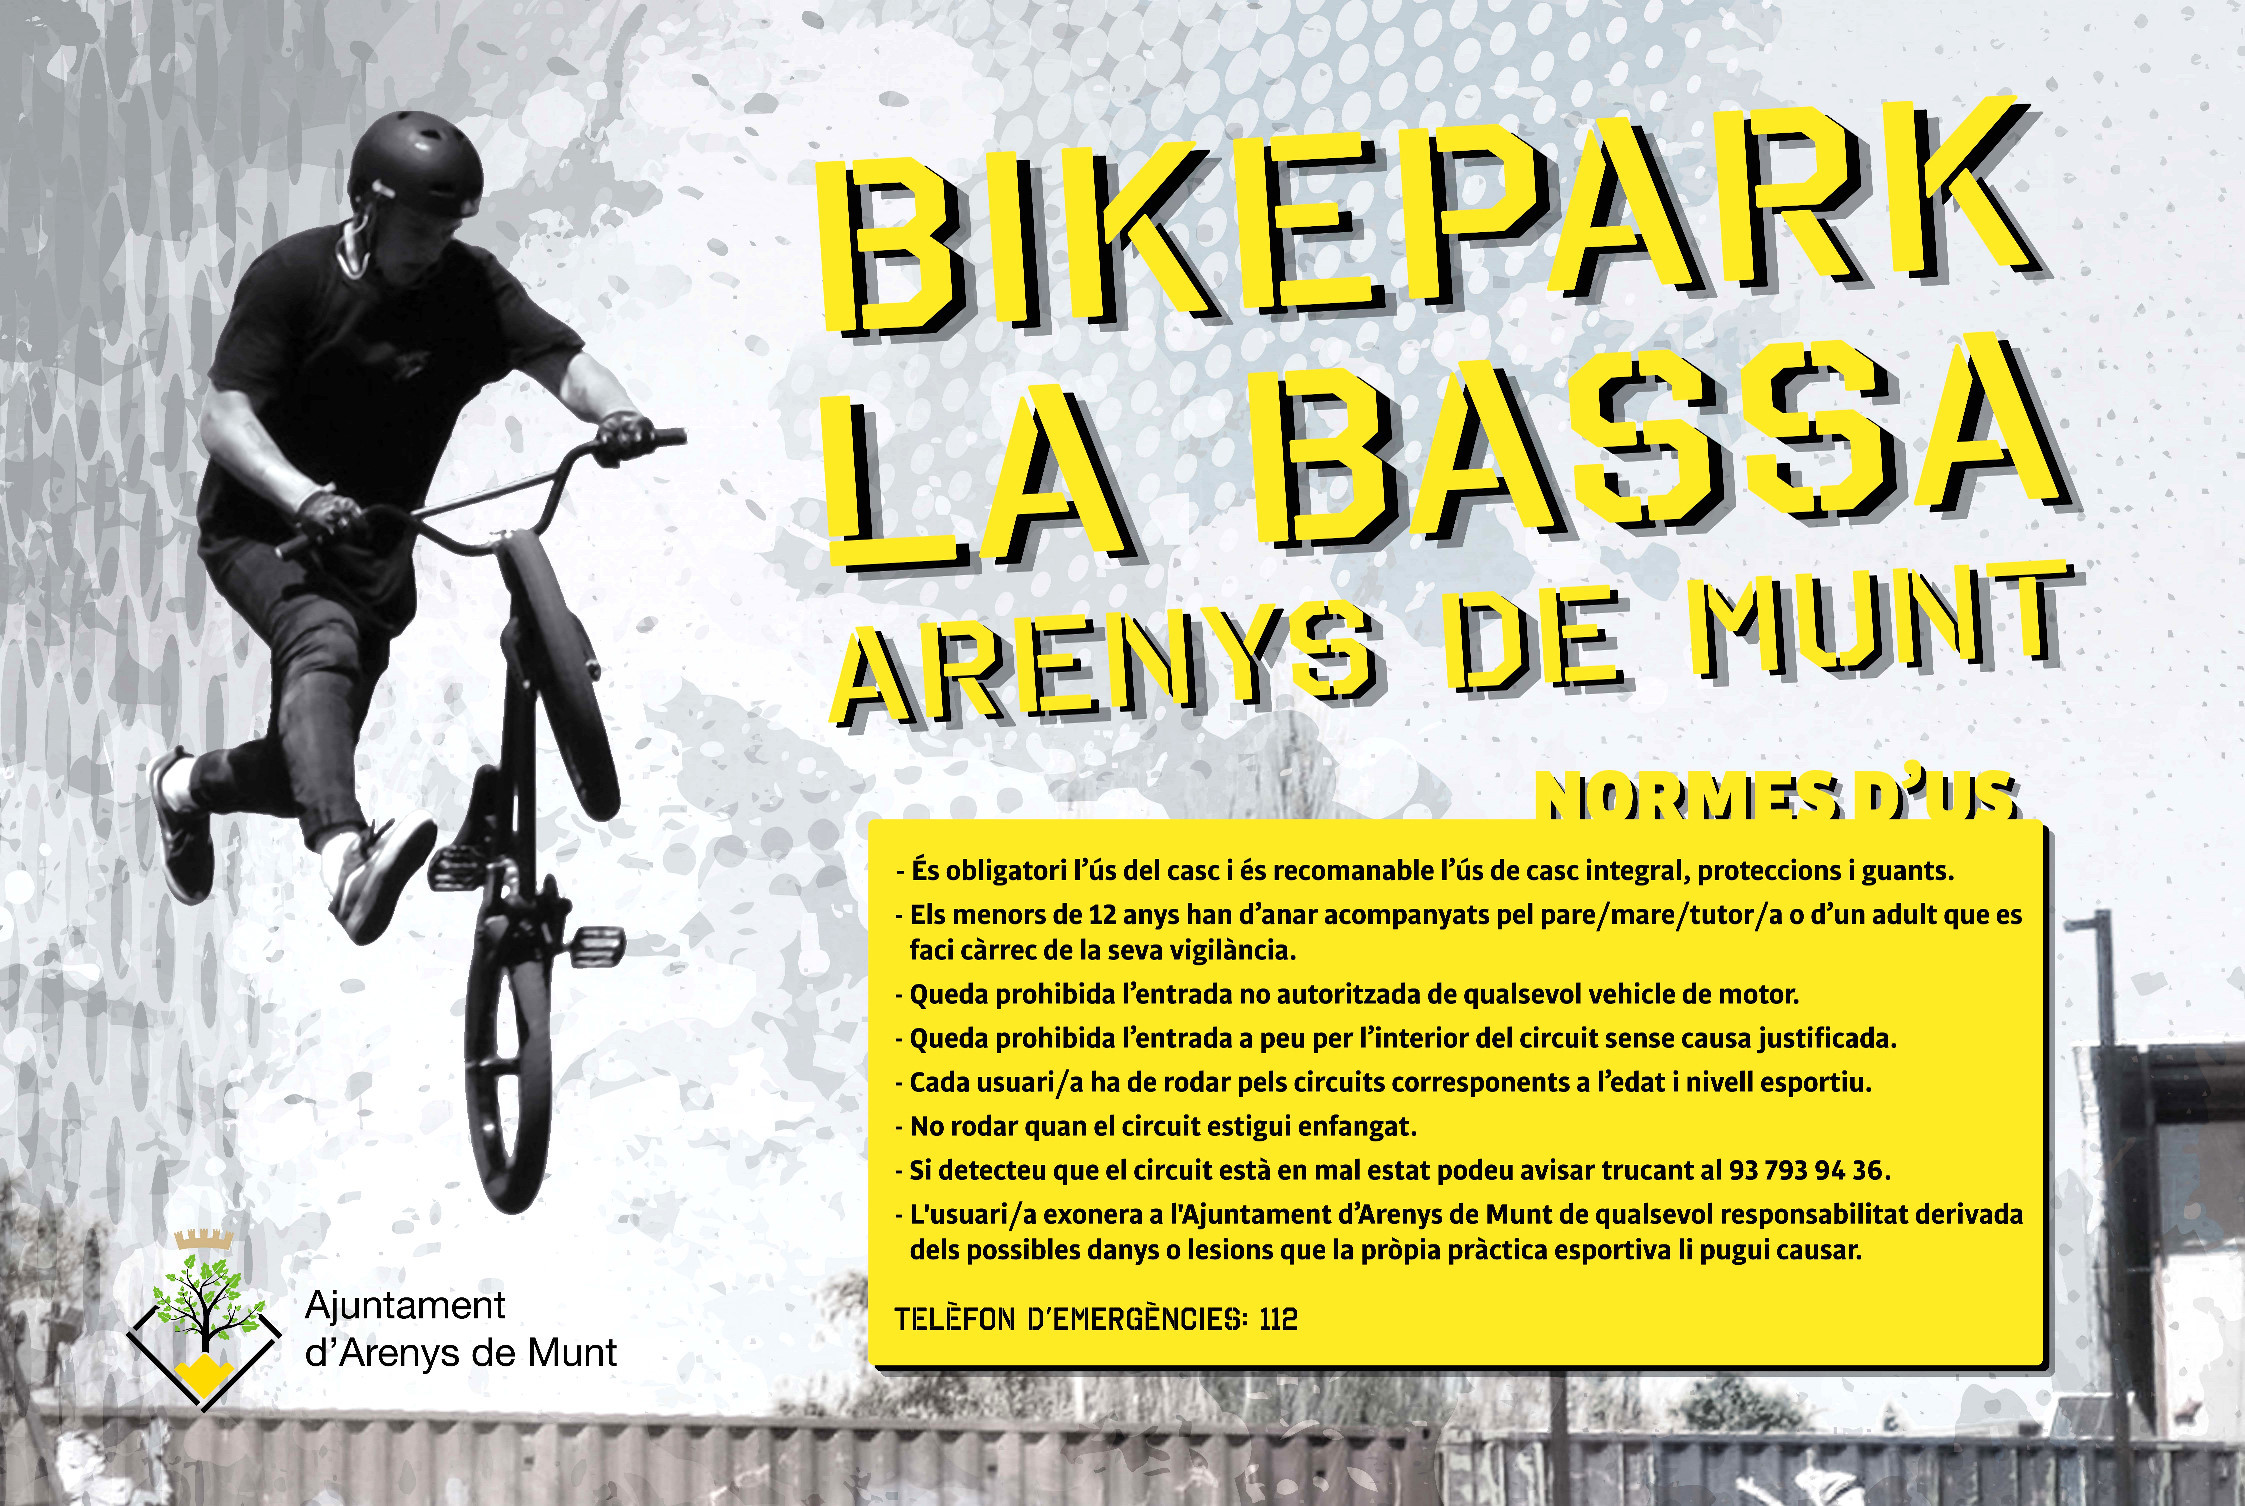 Normes d'ús Bikepark La Bassa